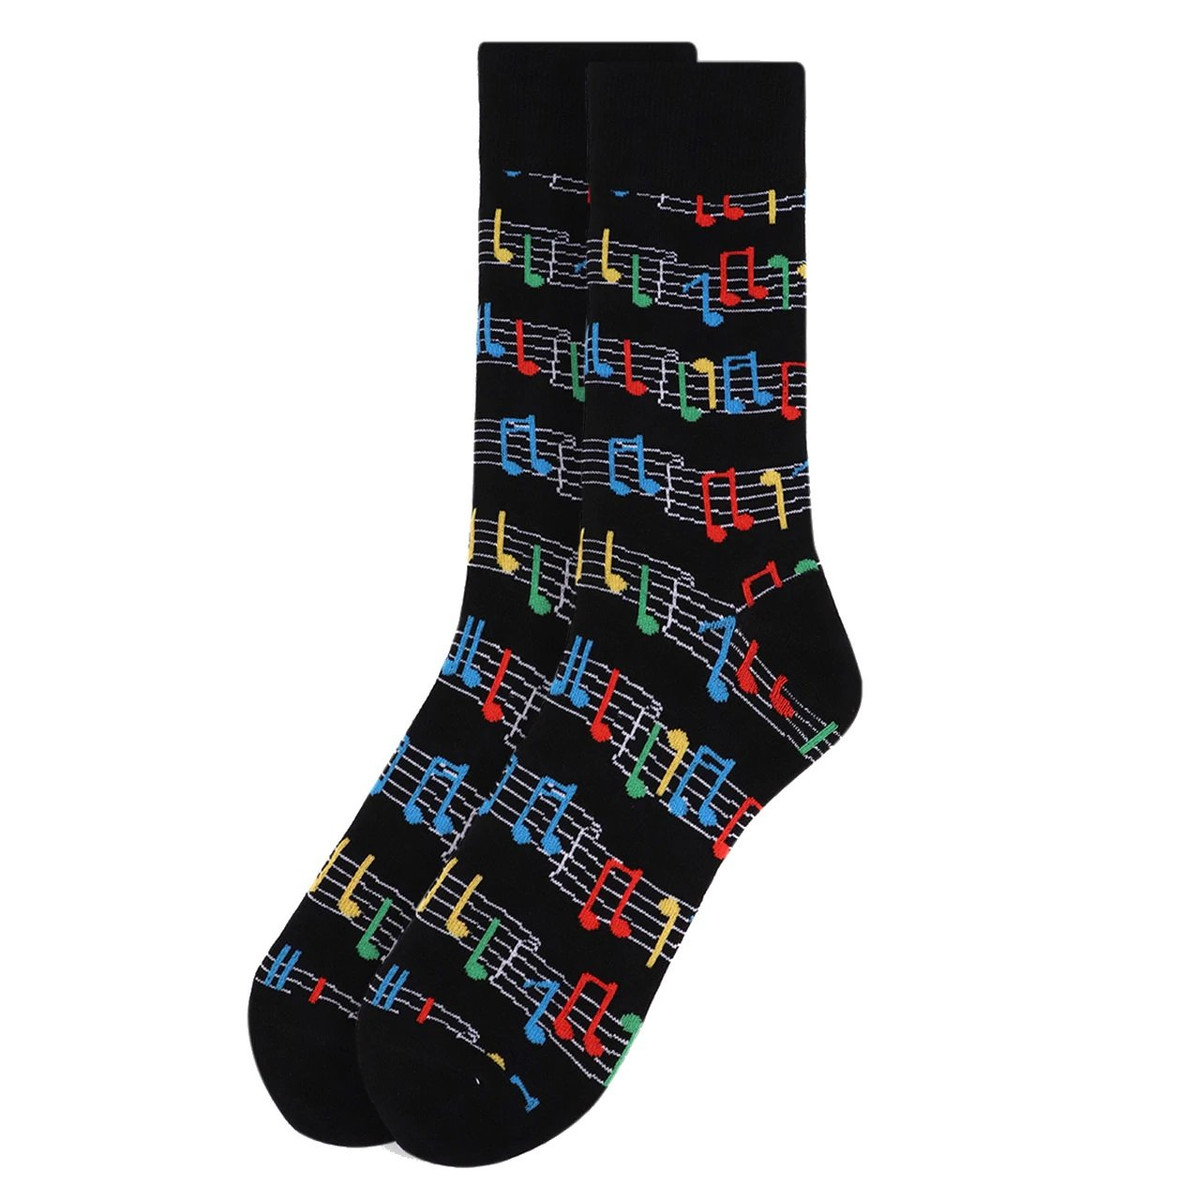 Pair of Men's Colorful Music Sheet Crew Novelty Socks - Black